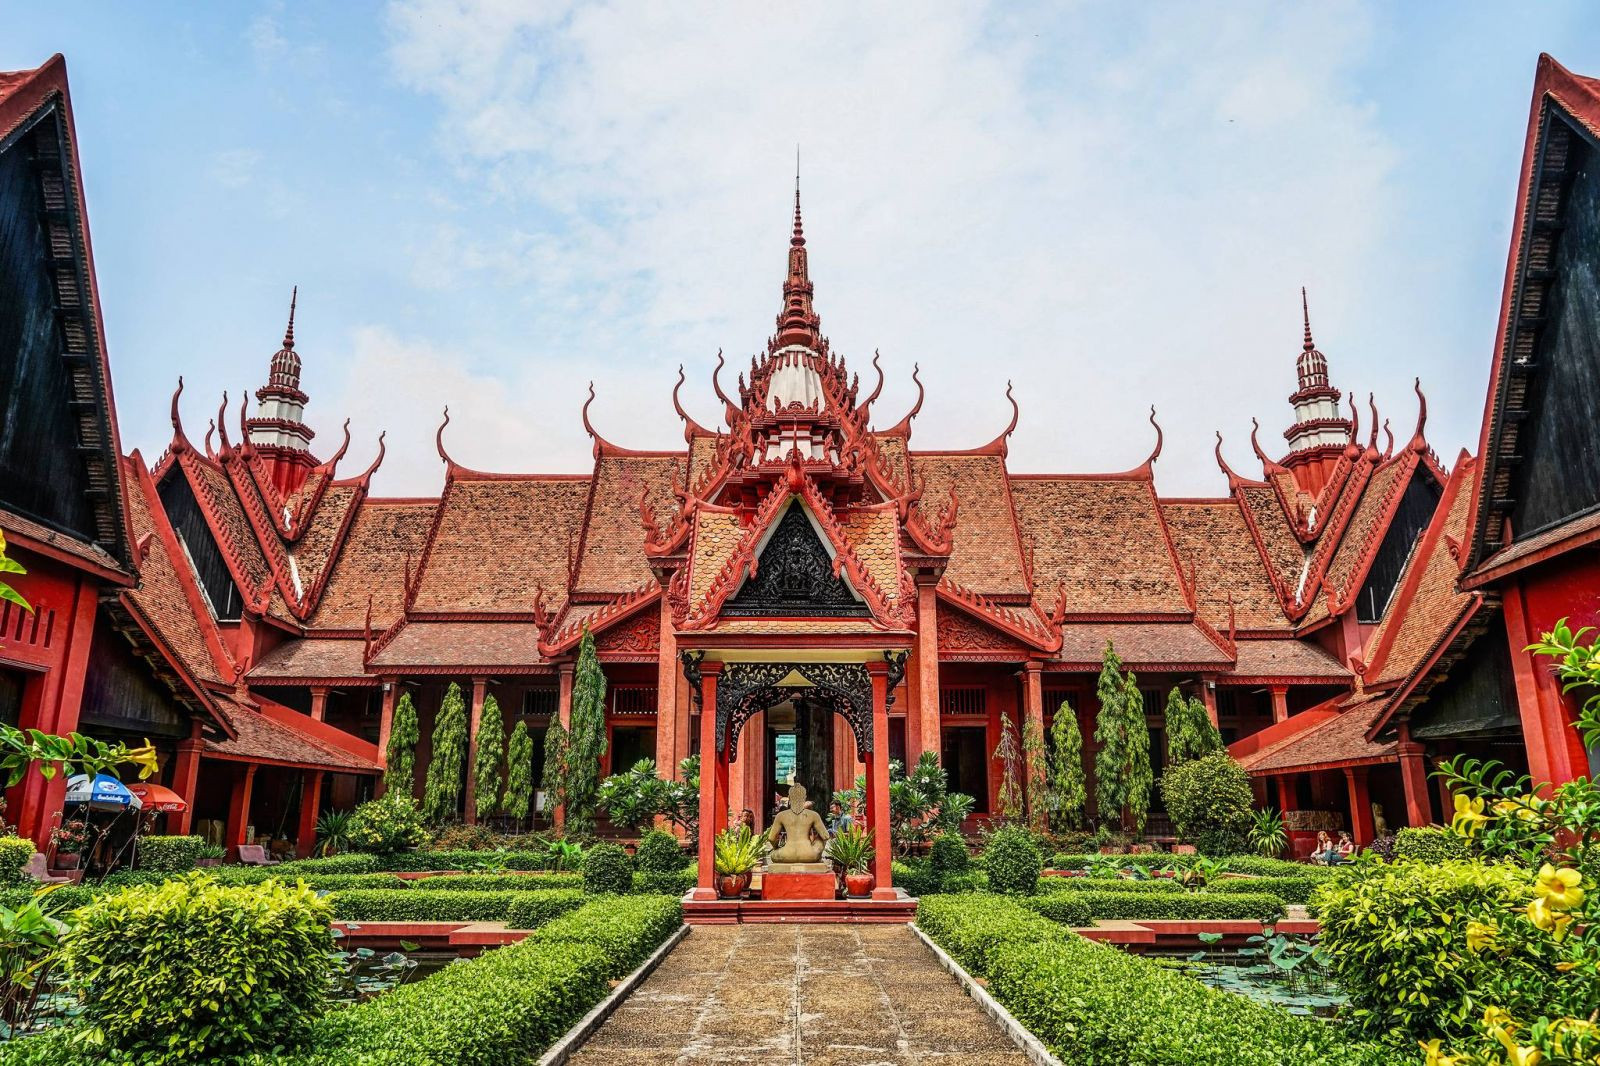 Bảo tàng quốc gia Phnom Penh là bảo tàng khảo cổ và văn học lịch sử hàng đầu của đất nước.